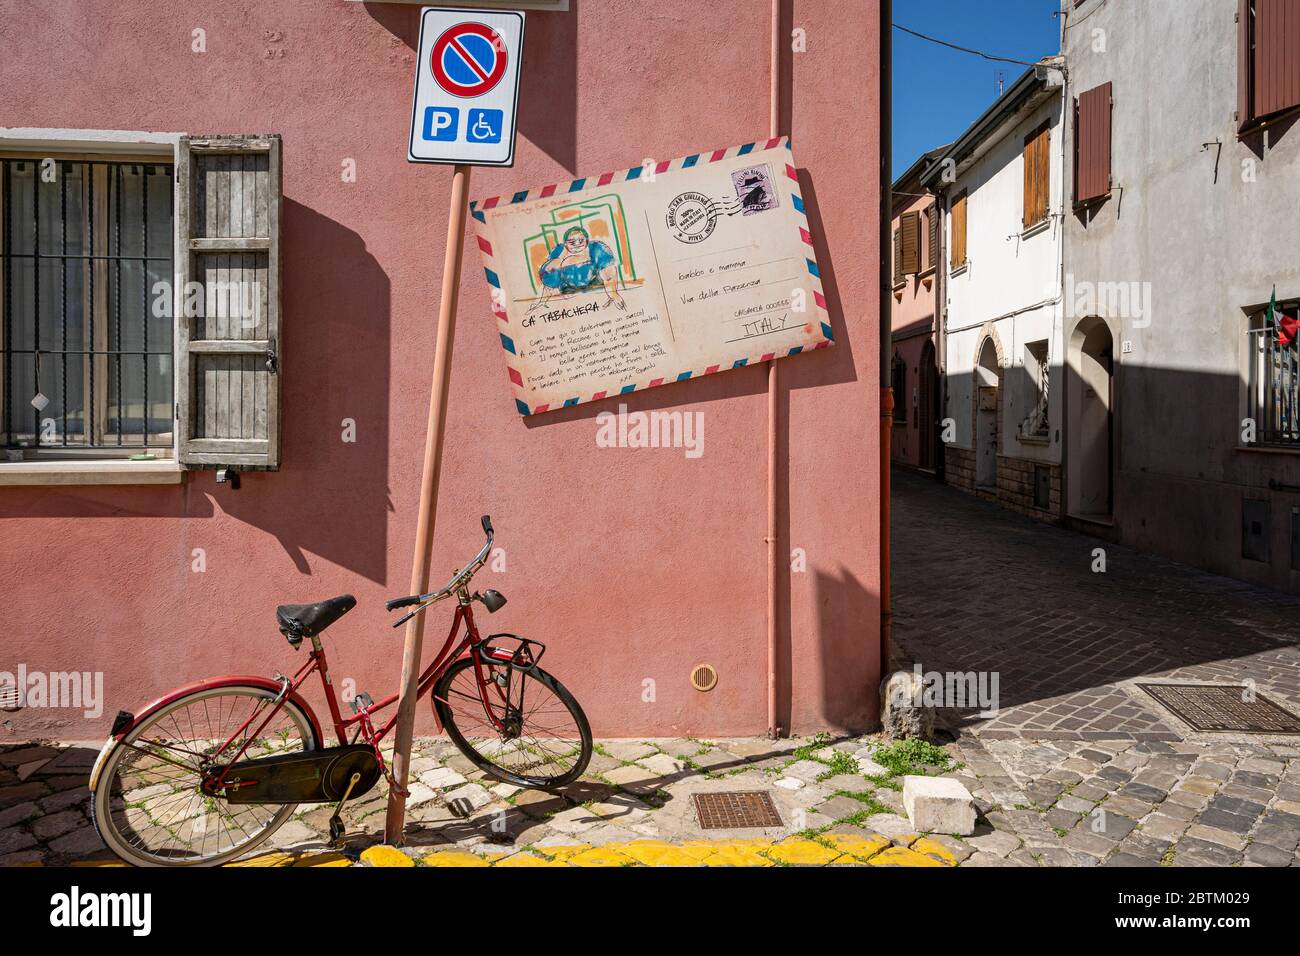 San Giuliano a Mare famous for its Fellini inspired graffiti, Rimini, Emilia Romagna, Italy, Europe. Stock Photo